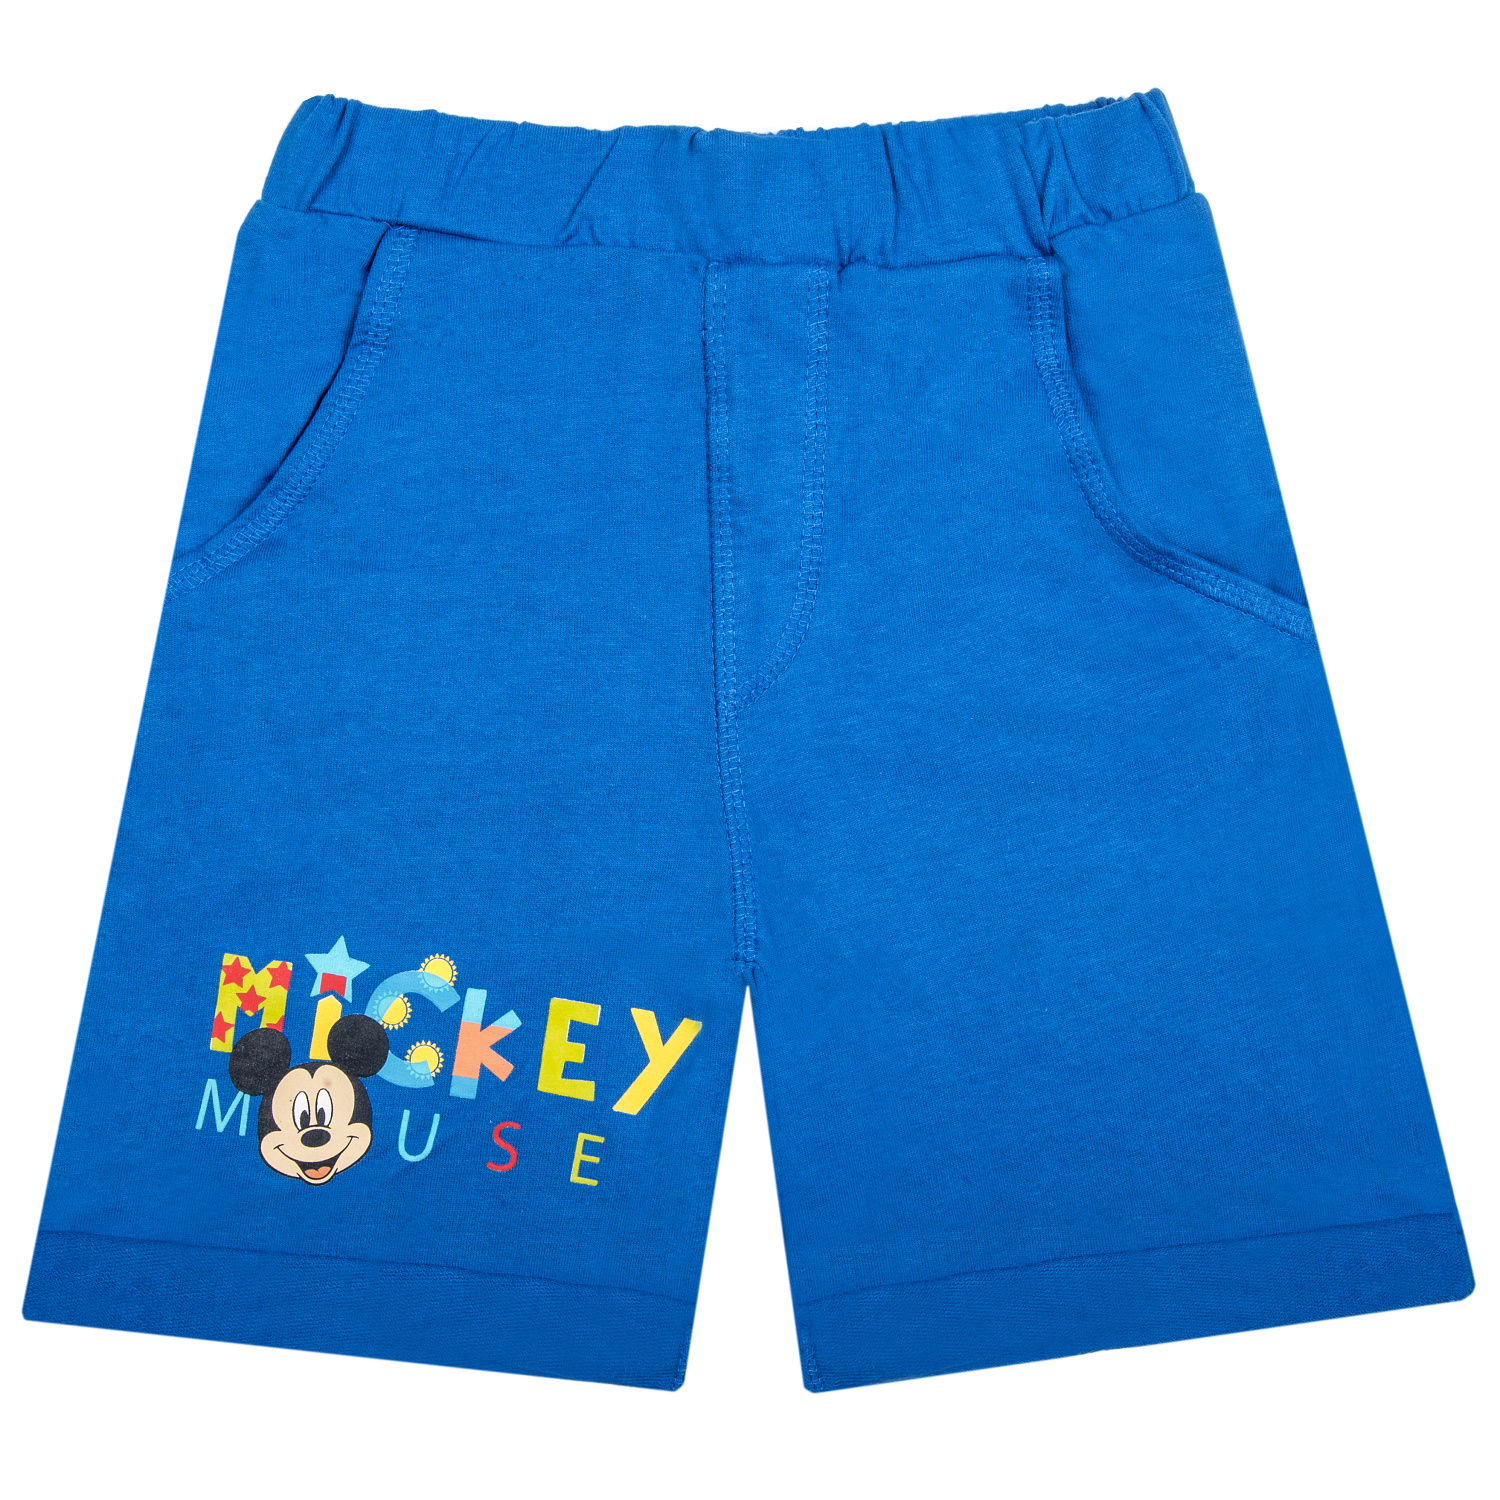 Levně Mickey Mouse - licence Chlapecké kraťasy - Mickey Mouse 52078549, modrá světlejší Barva: Modrá